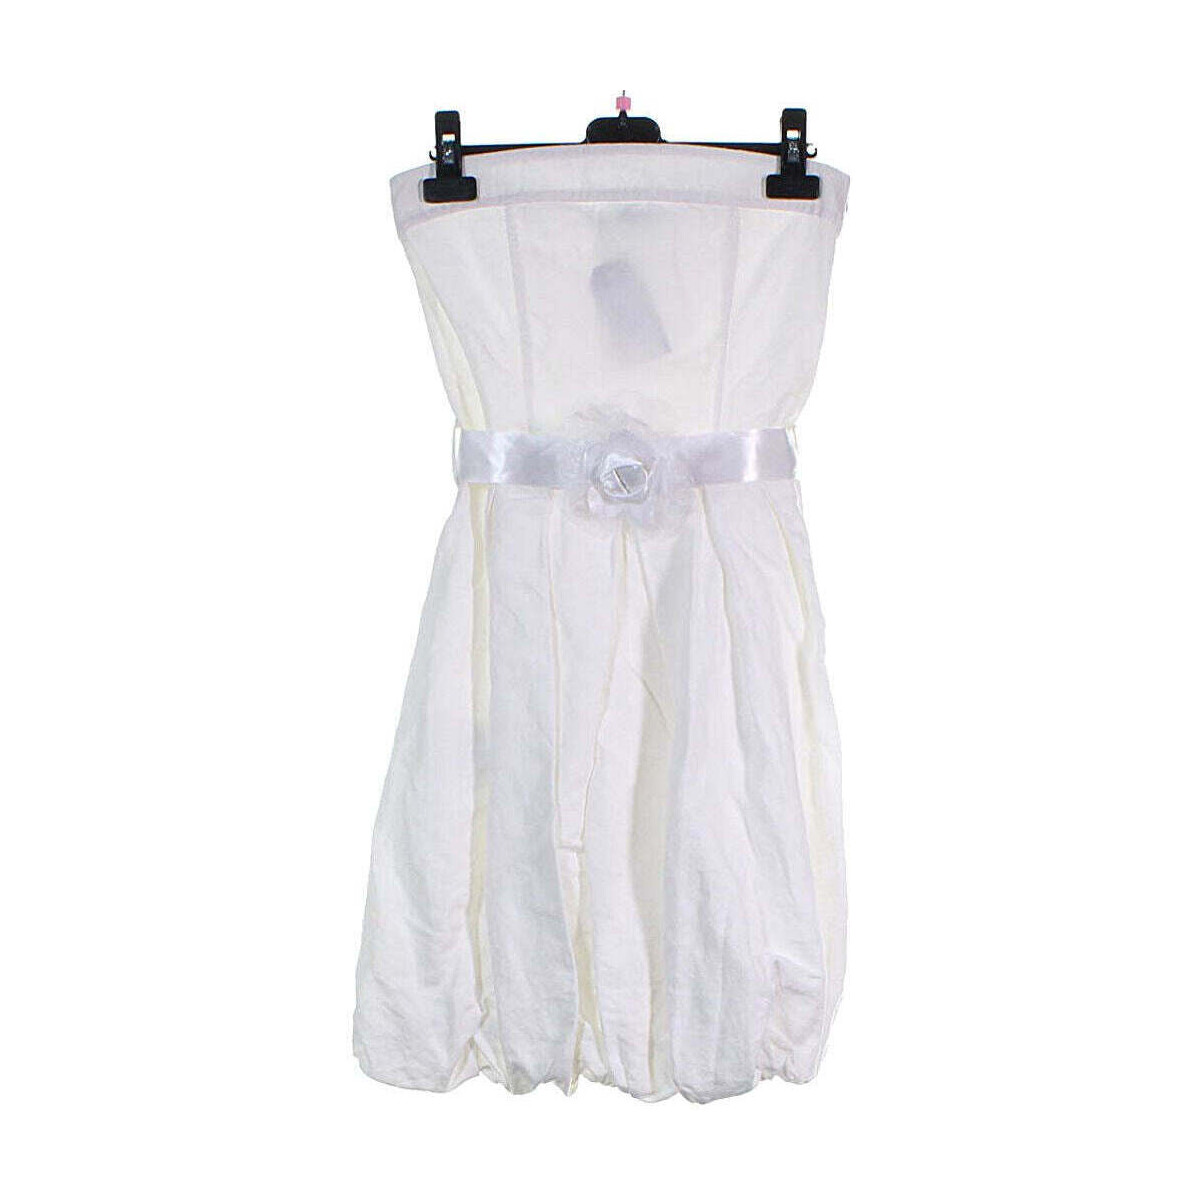 Vêtements Femme Calvin Klein Jea robe courte  36 - T1 - S Blanc Blanc